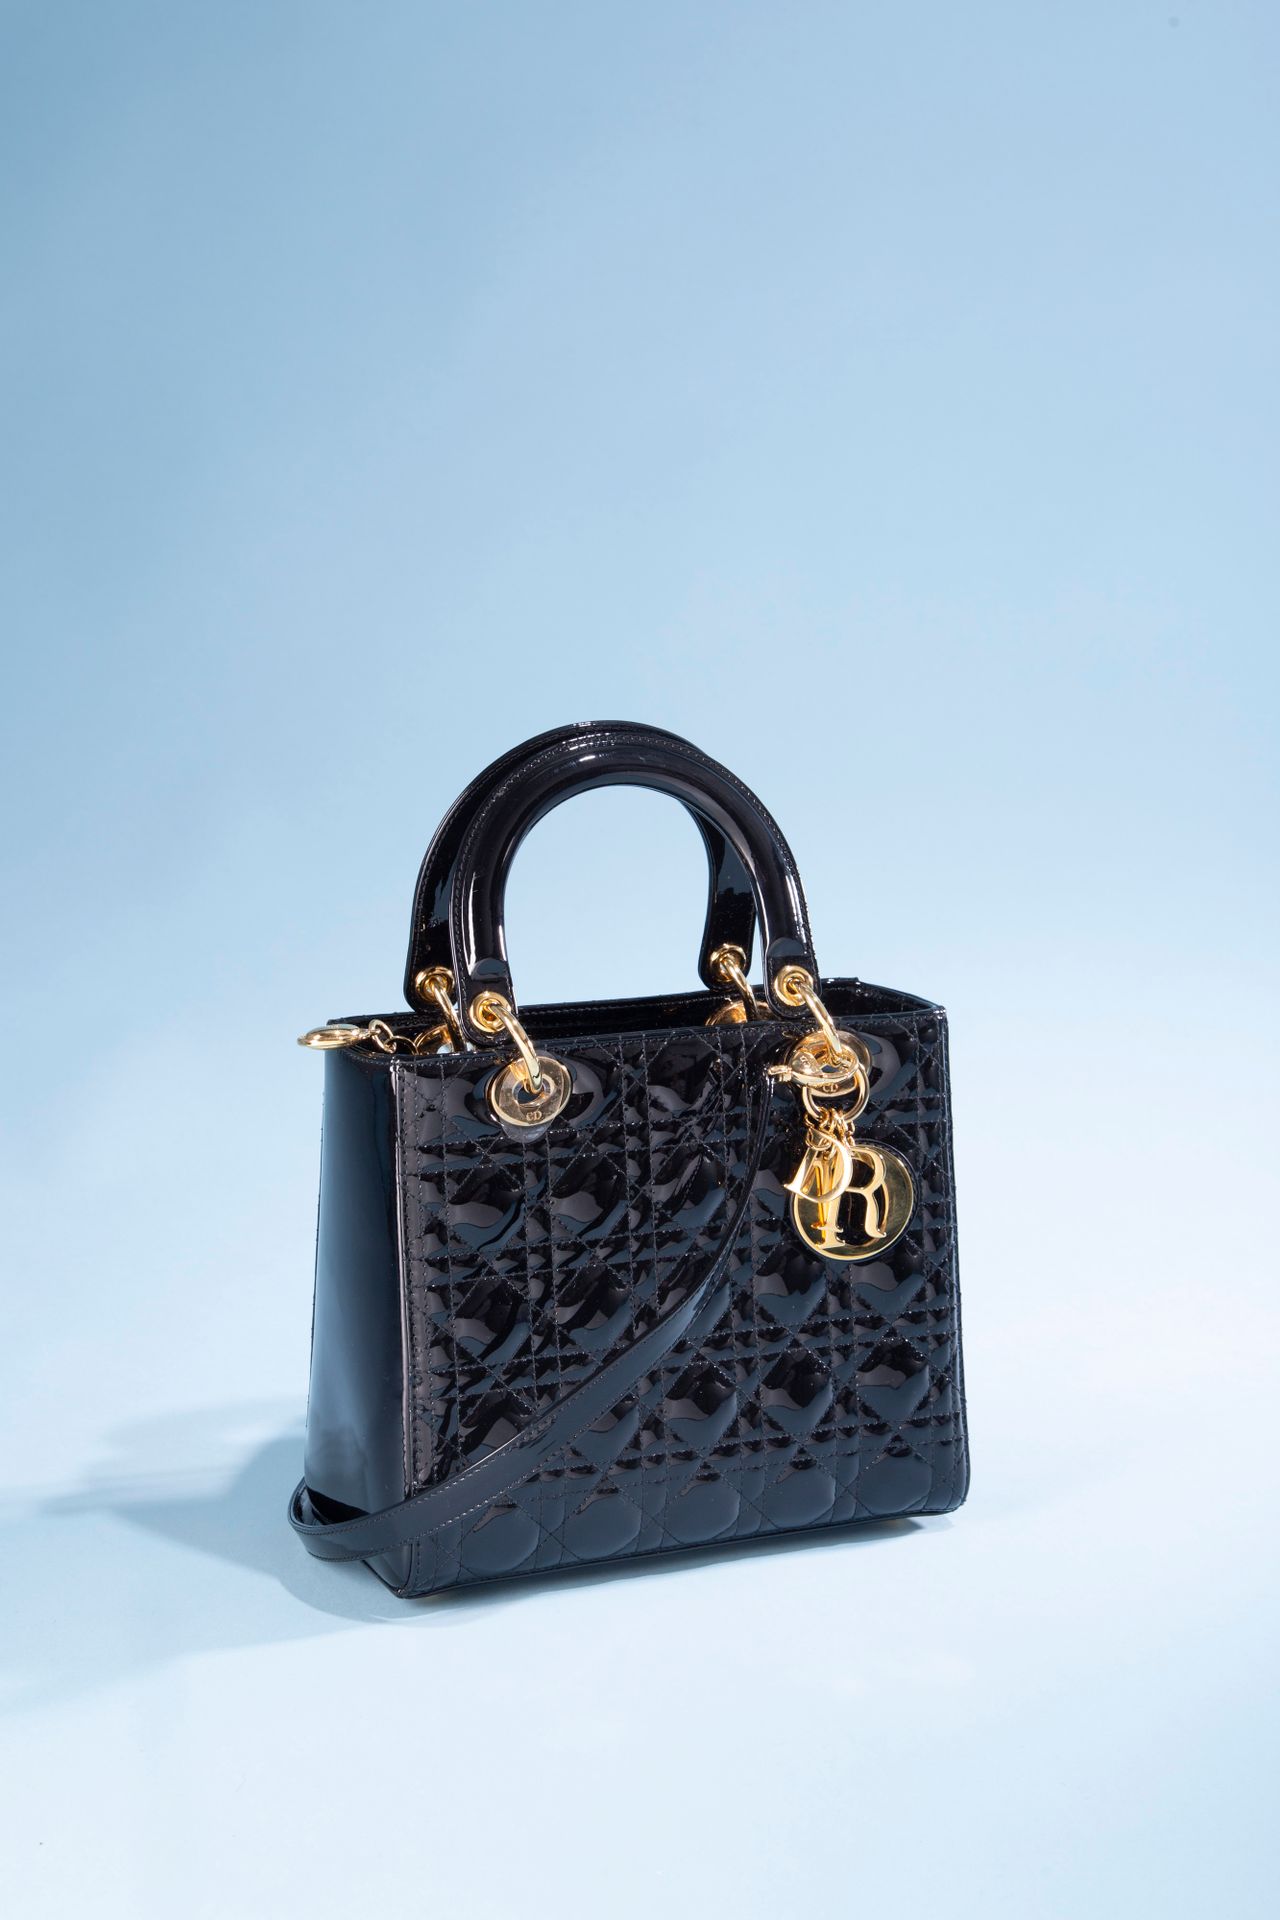 Null 克里斯蒂安-迪奥。
Lady Dior "包，黑色绗缝漆皮，两个手柄用于携带和一个可拆卸的肩带，金色金属首饰，带有品牌字母的吊饰，拉链开合，内部为黑色&hellip;